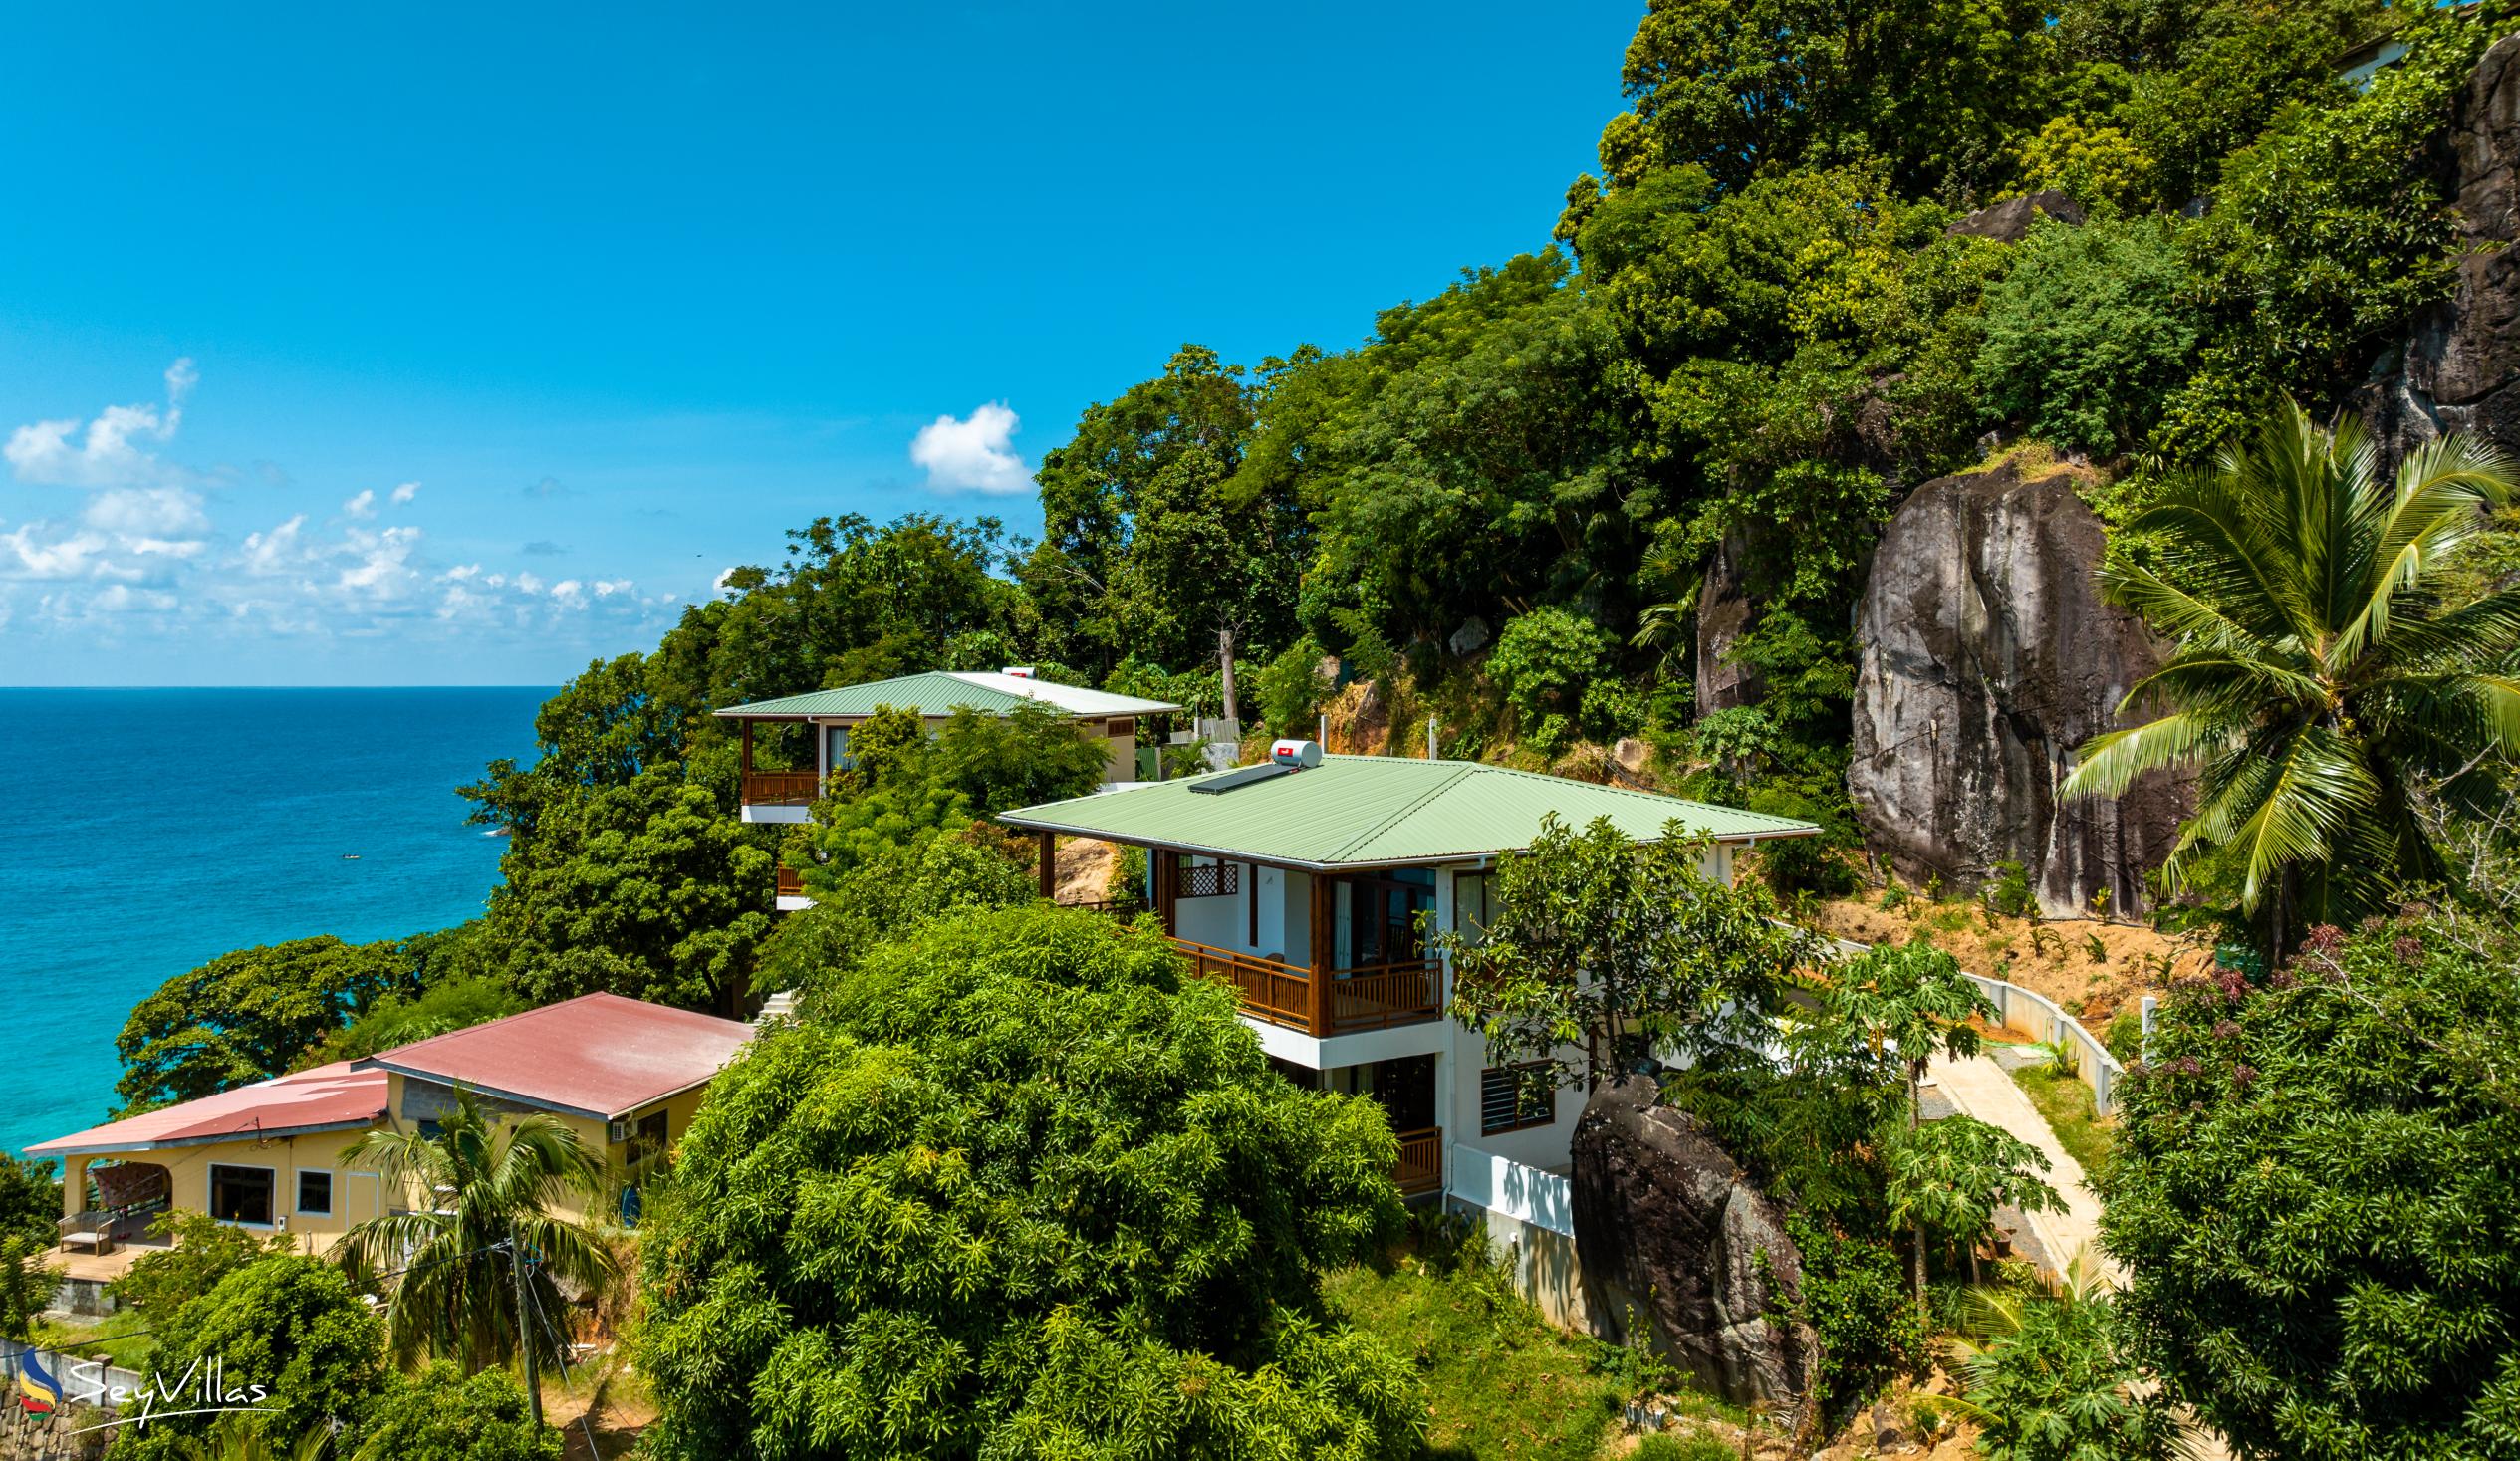 Photo 3: Sunbird Villas - Outdoor area - Mahé (Seychelles)